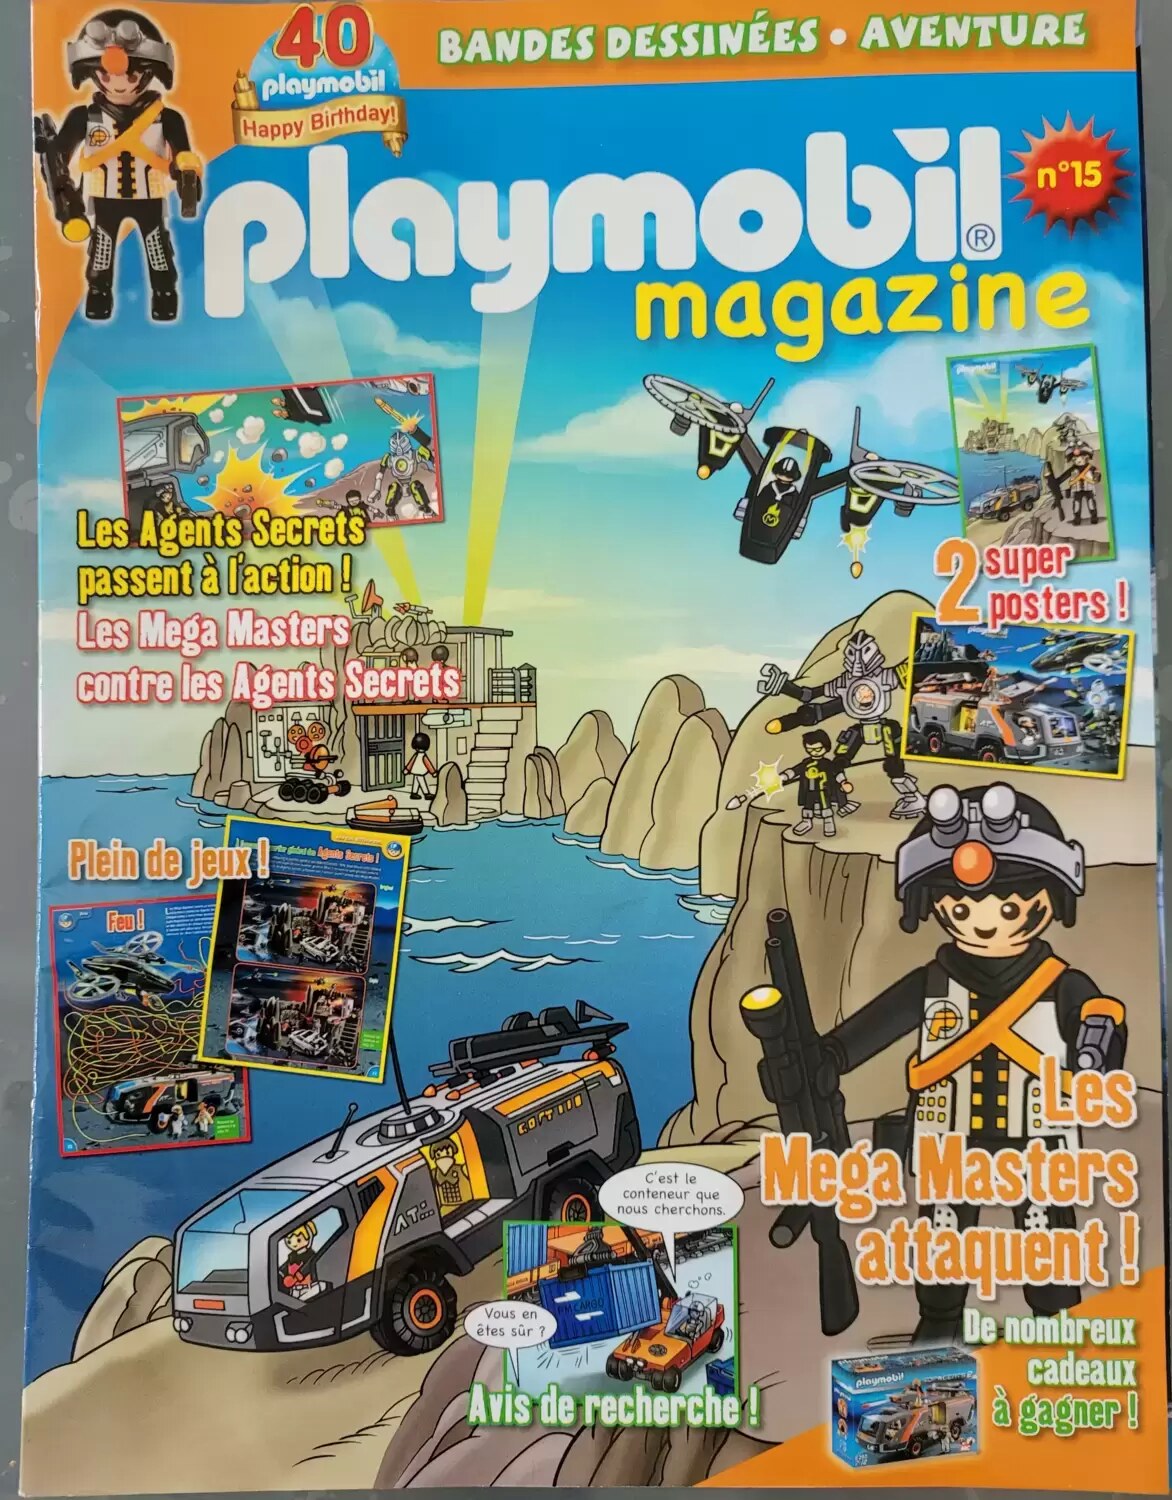 Playmobil Magazine - Les Mega Masters attaquent